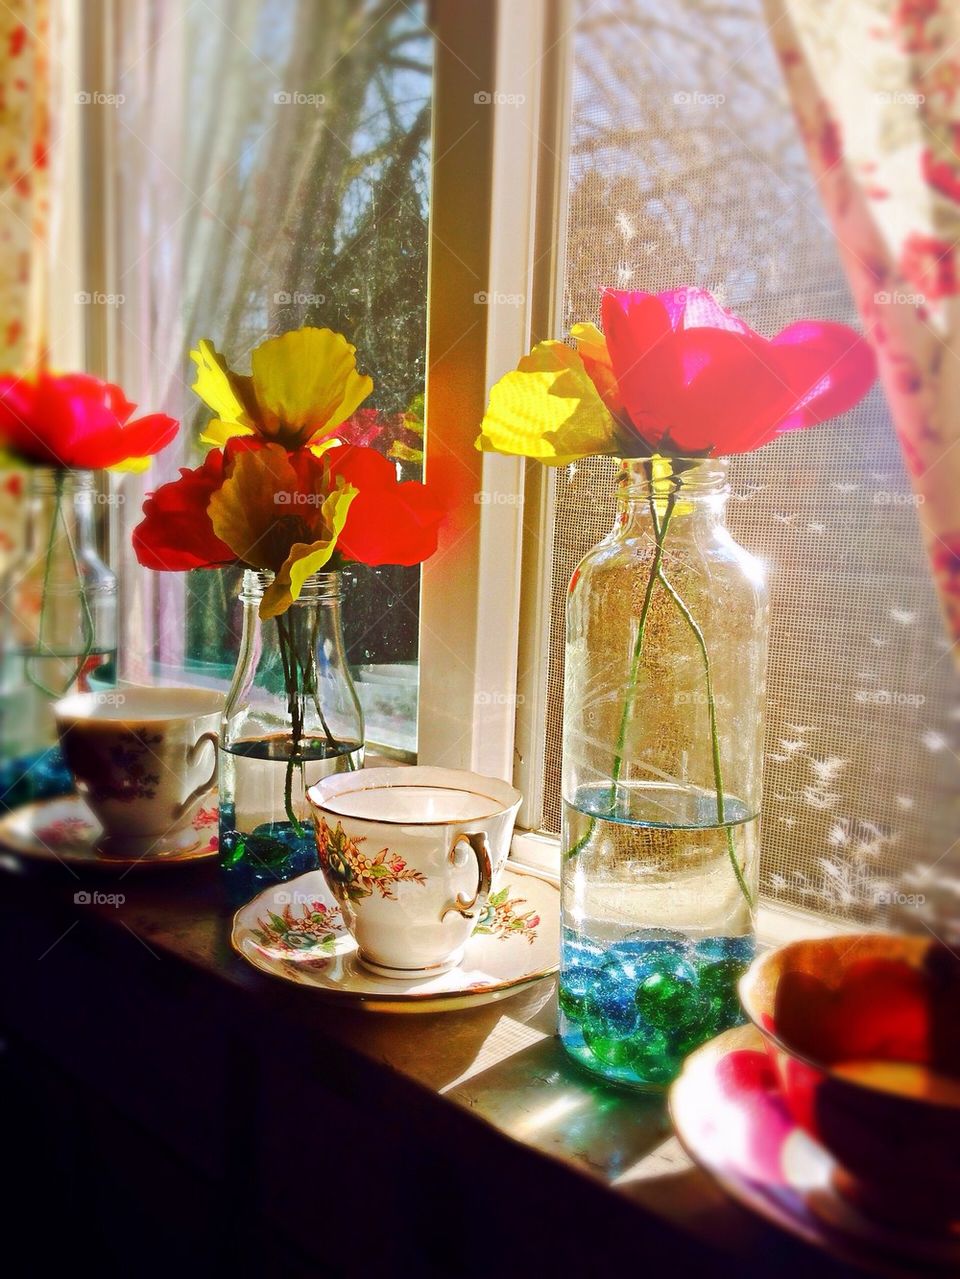 Flowers in window 